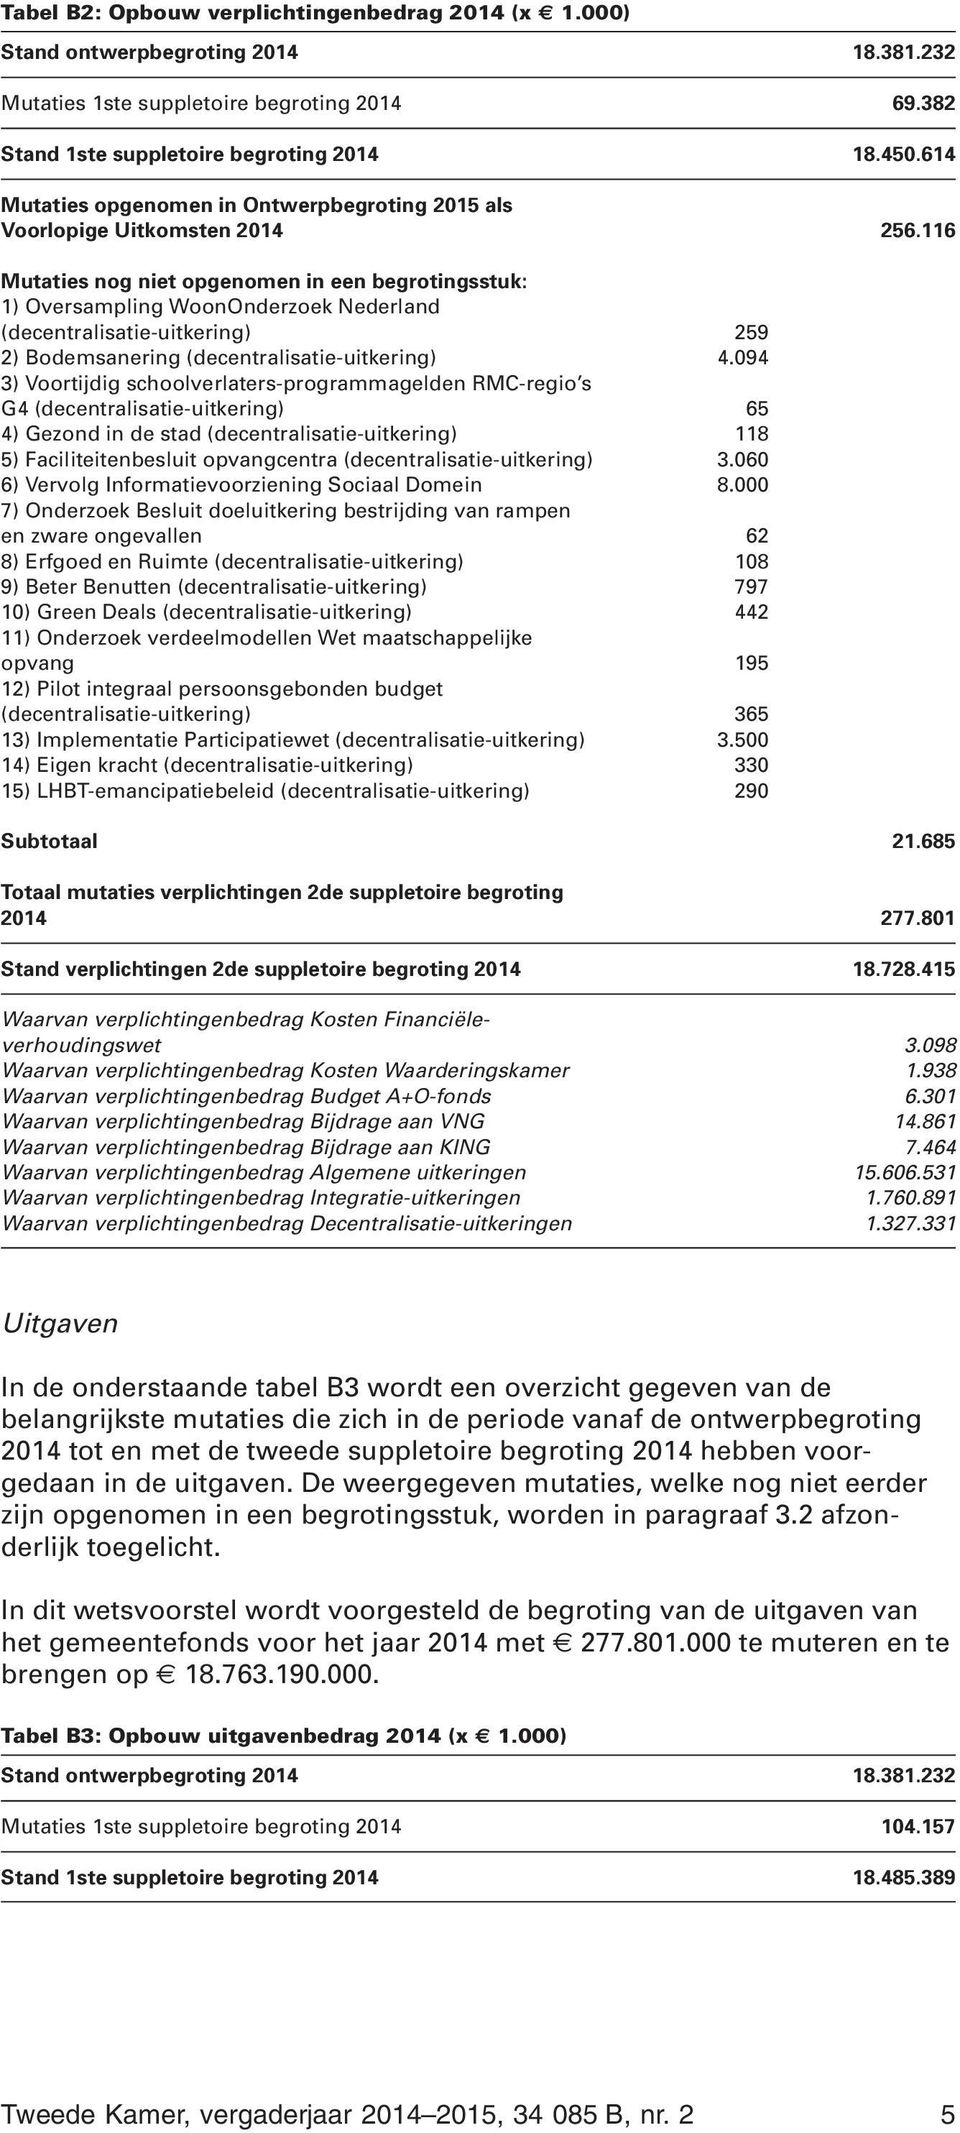 116 Mutaties nog niet opgenomen in een begrotingsstuk: 1) Oversampling WoonOnderzoek Nederland (decentralisatie-uitkering) 259 2) Bodemsanering (decentralisatie-uitkering) 4.